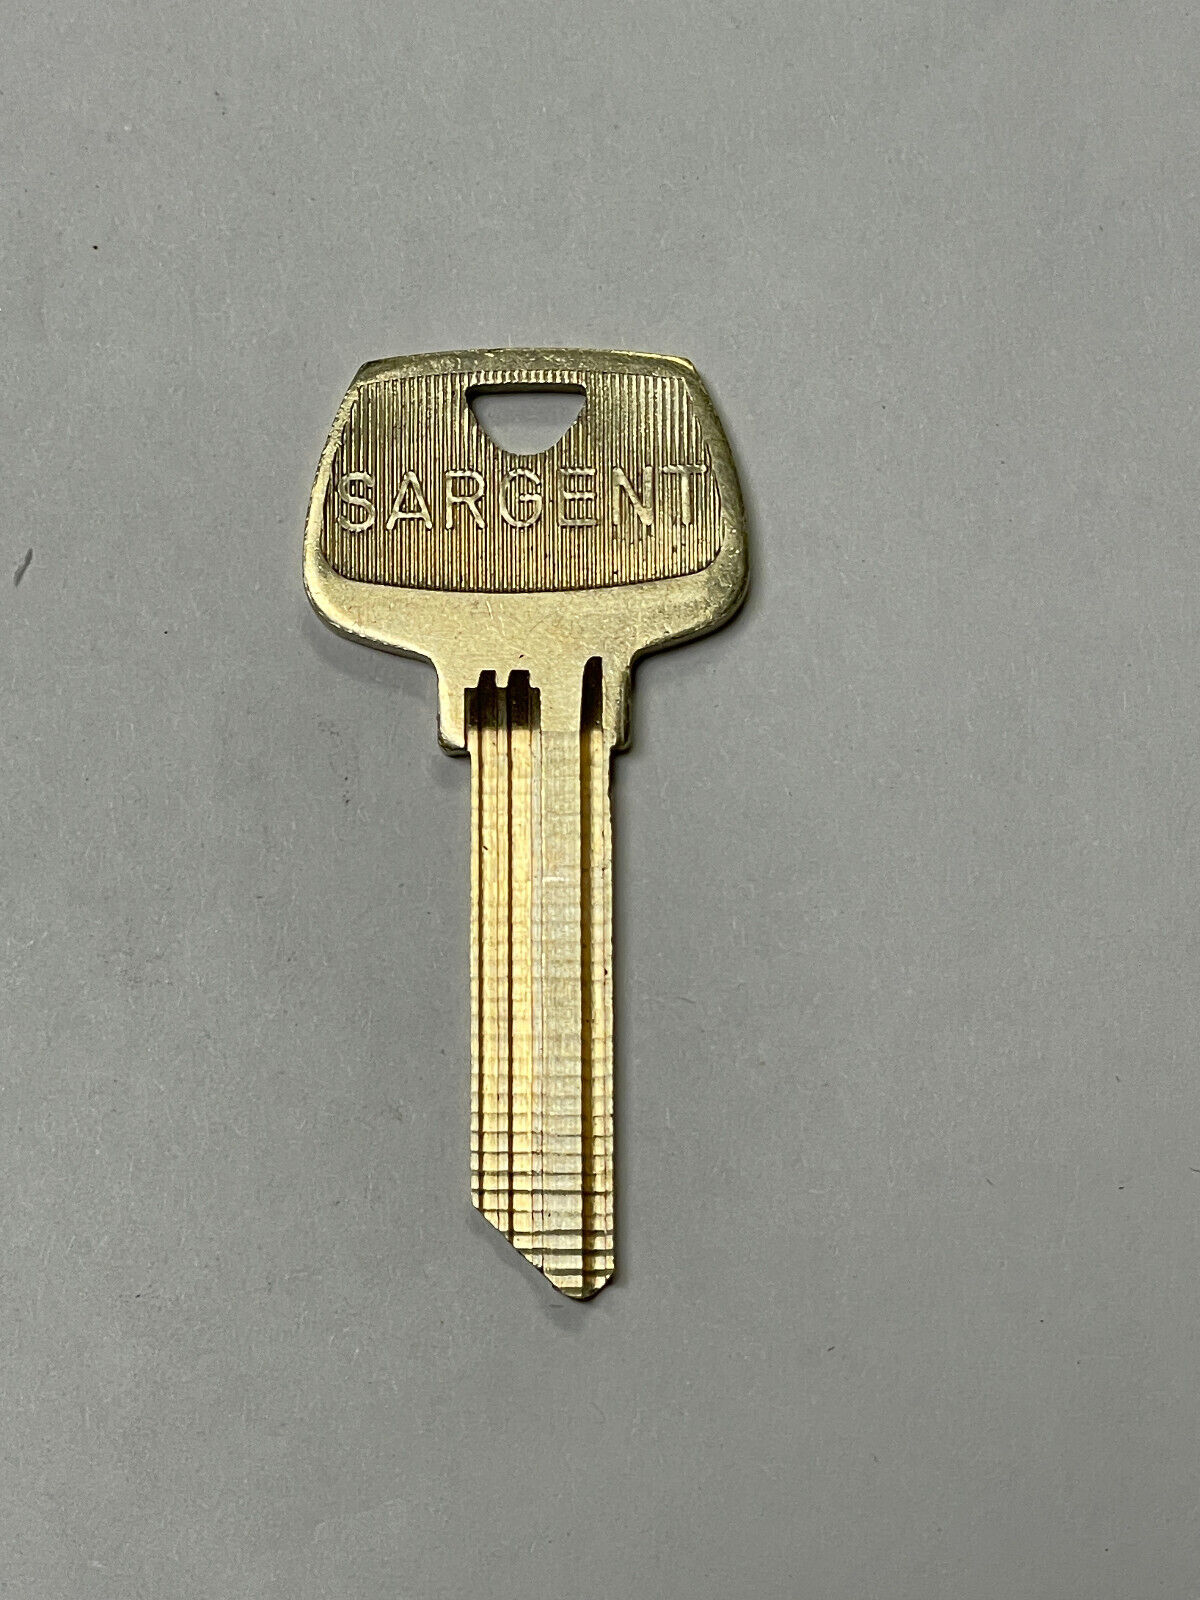 Sargent Original Key Blank 6275HF, 6-Pin, Ilco #O1007HF, NOS